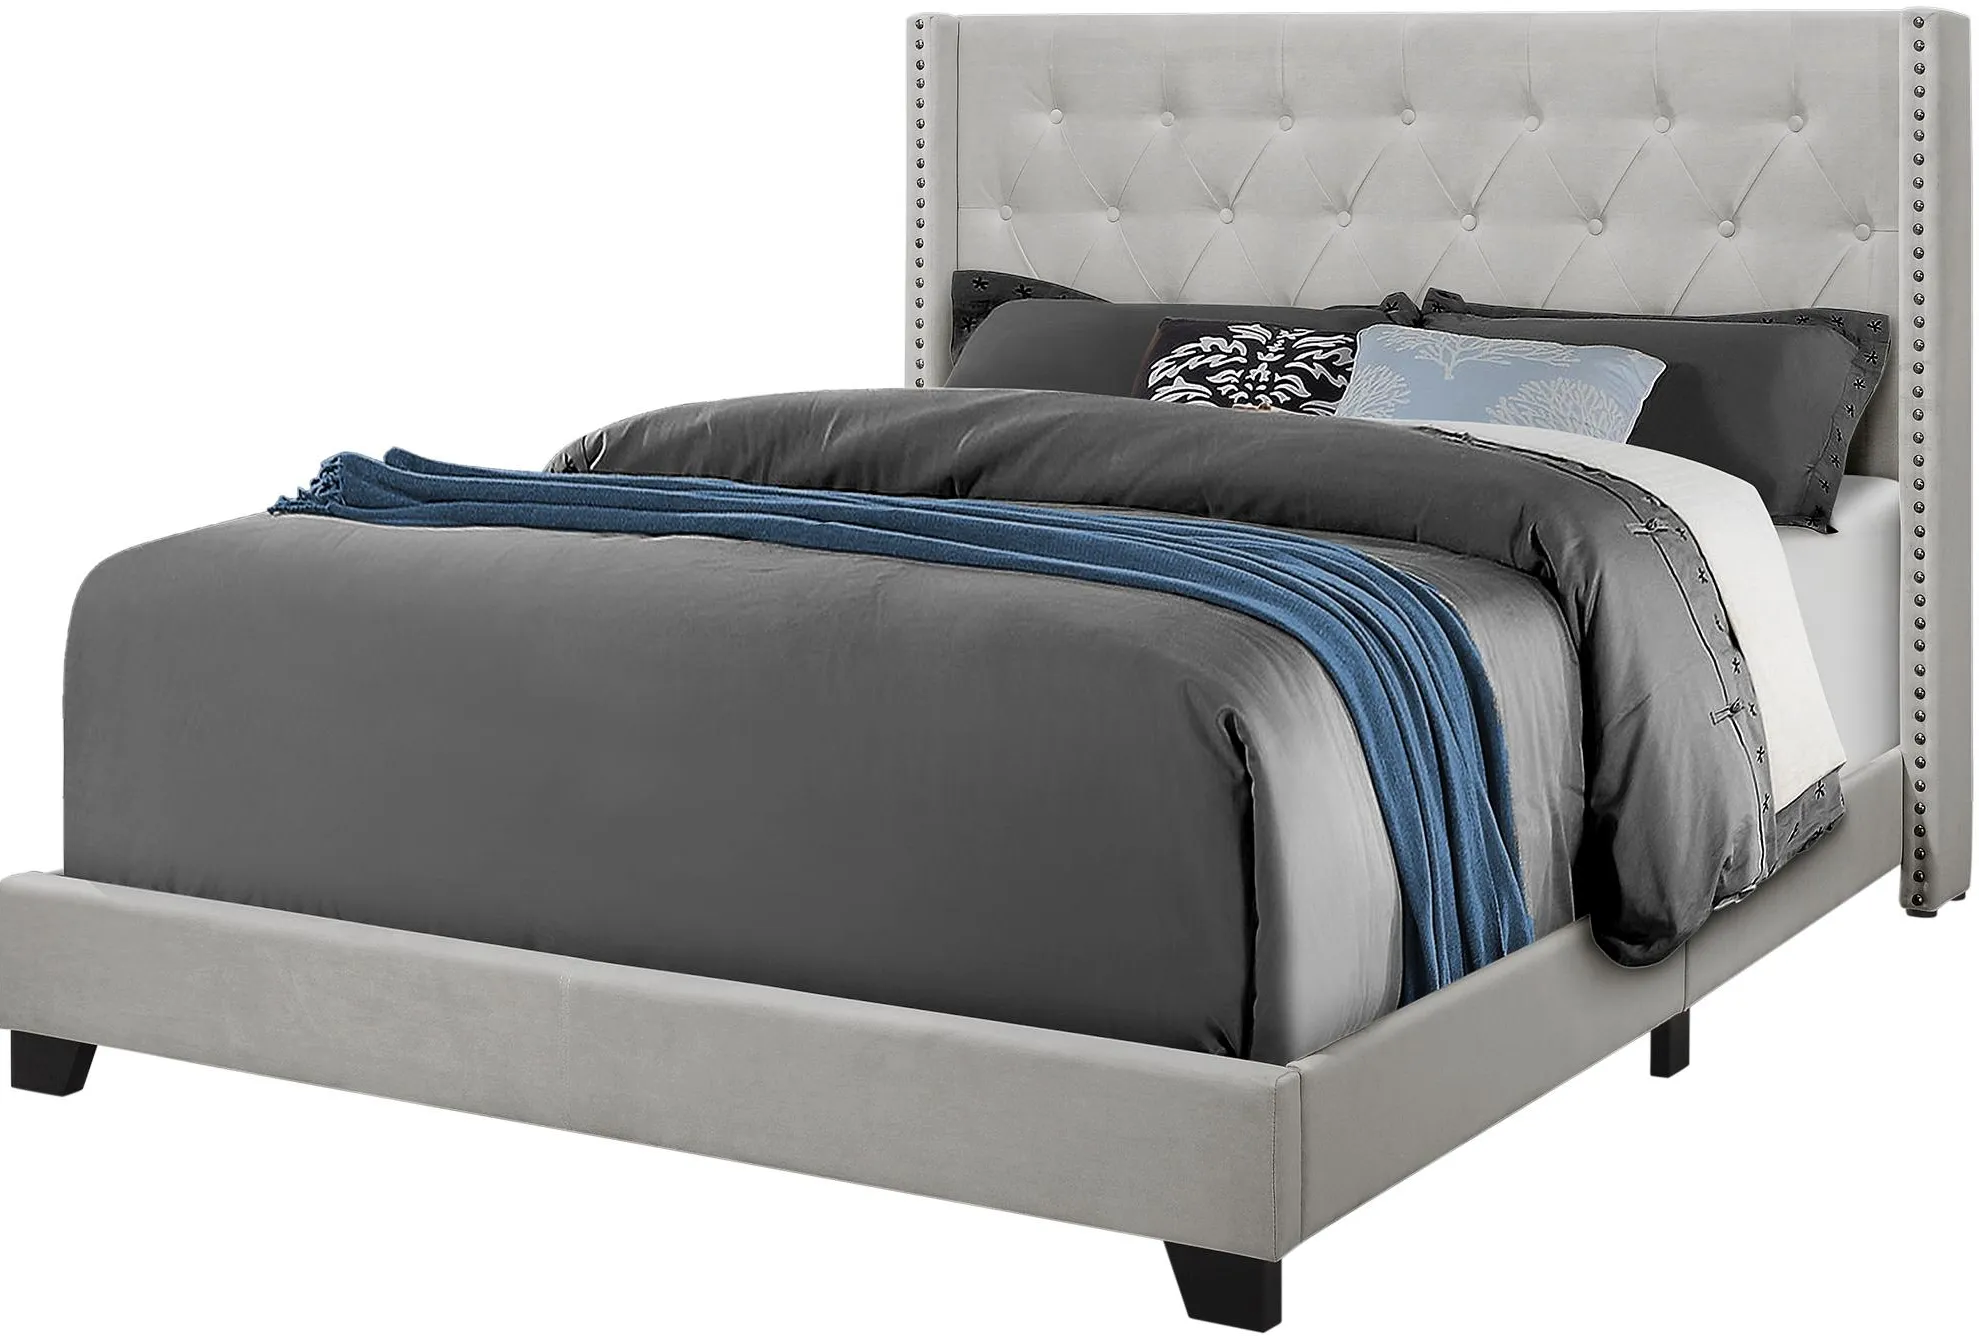 Bed, Queen Size, Platform, Bedroom, Frame, Upholstered, Velvet, Wood Legs, Grey, Transitional